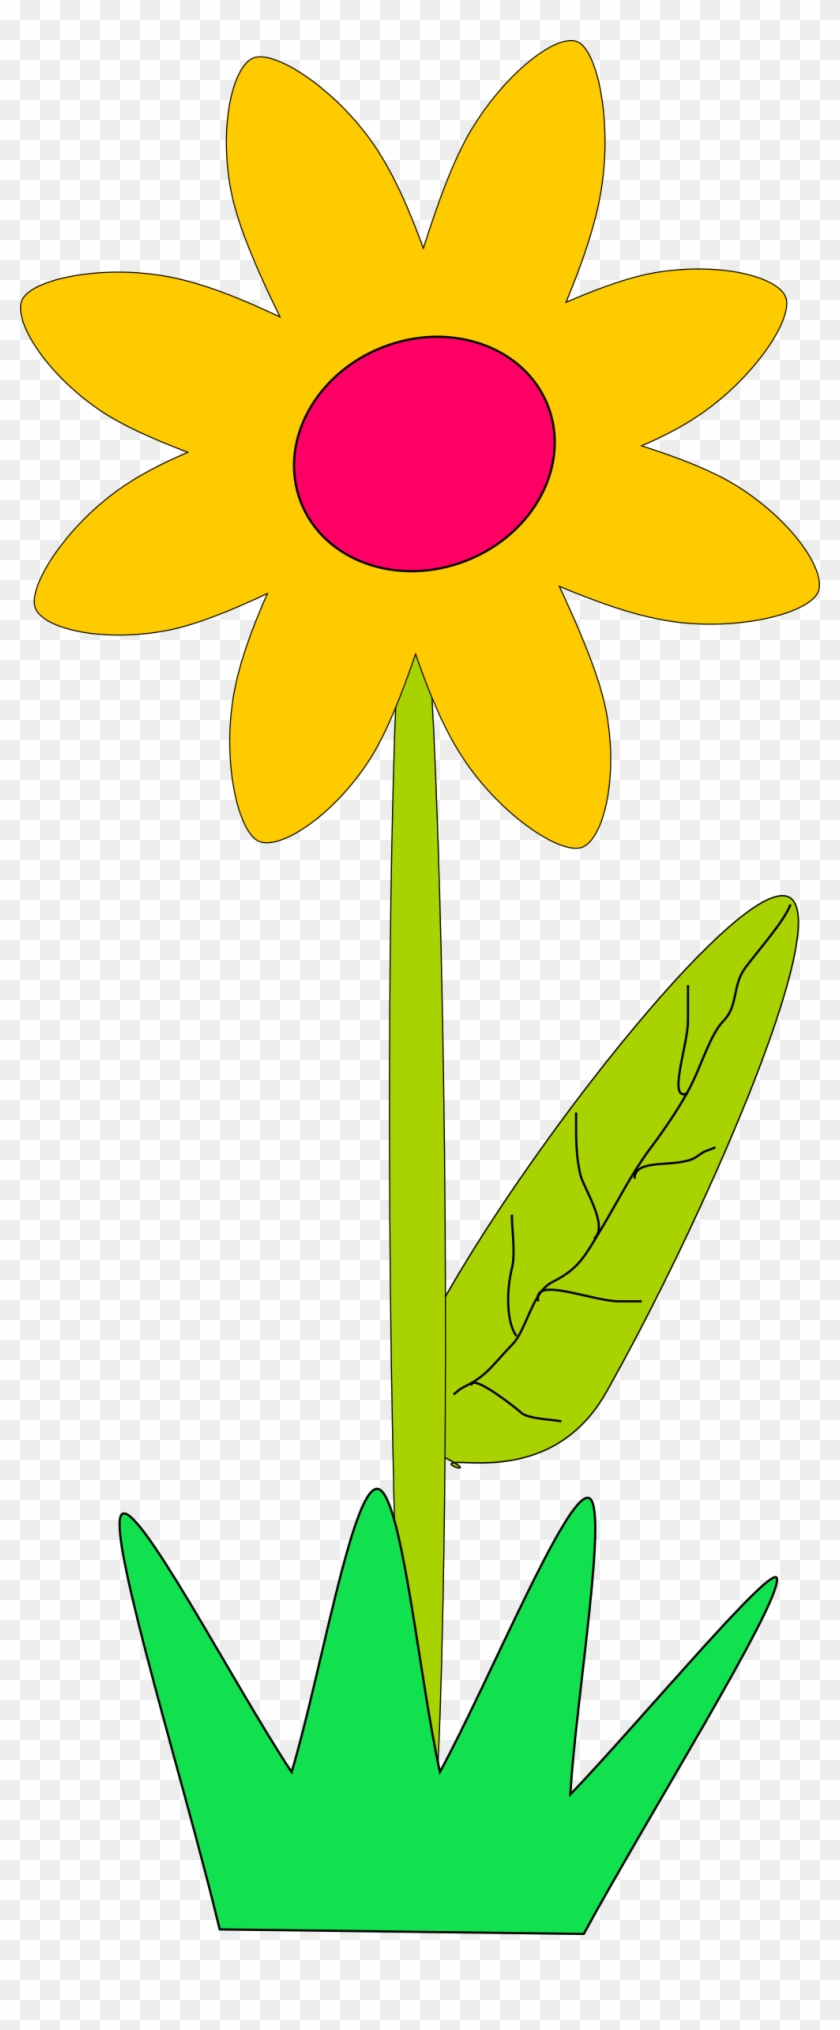 Flower - Spring Flowers Clip Art #157953